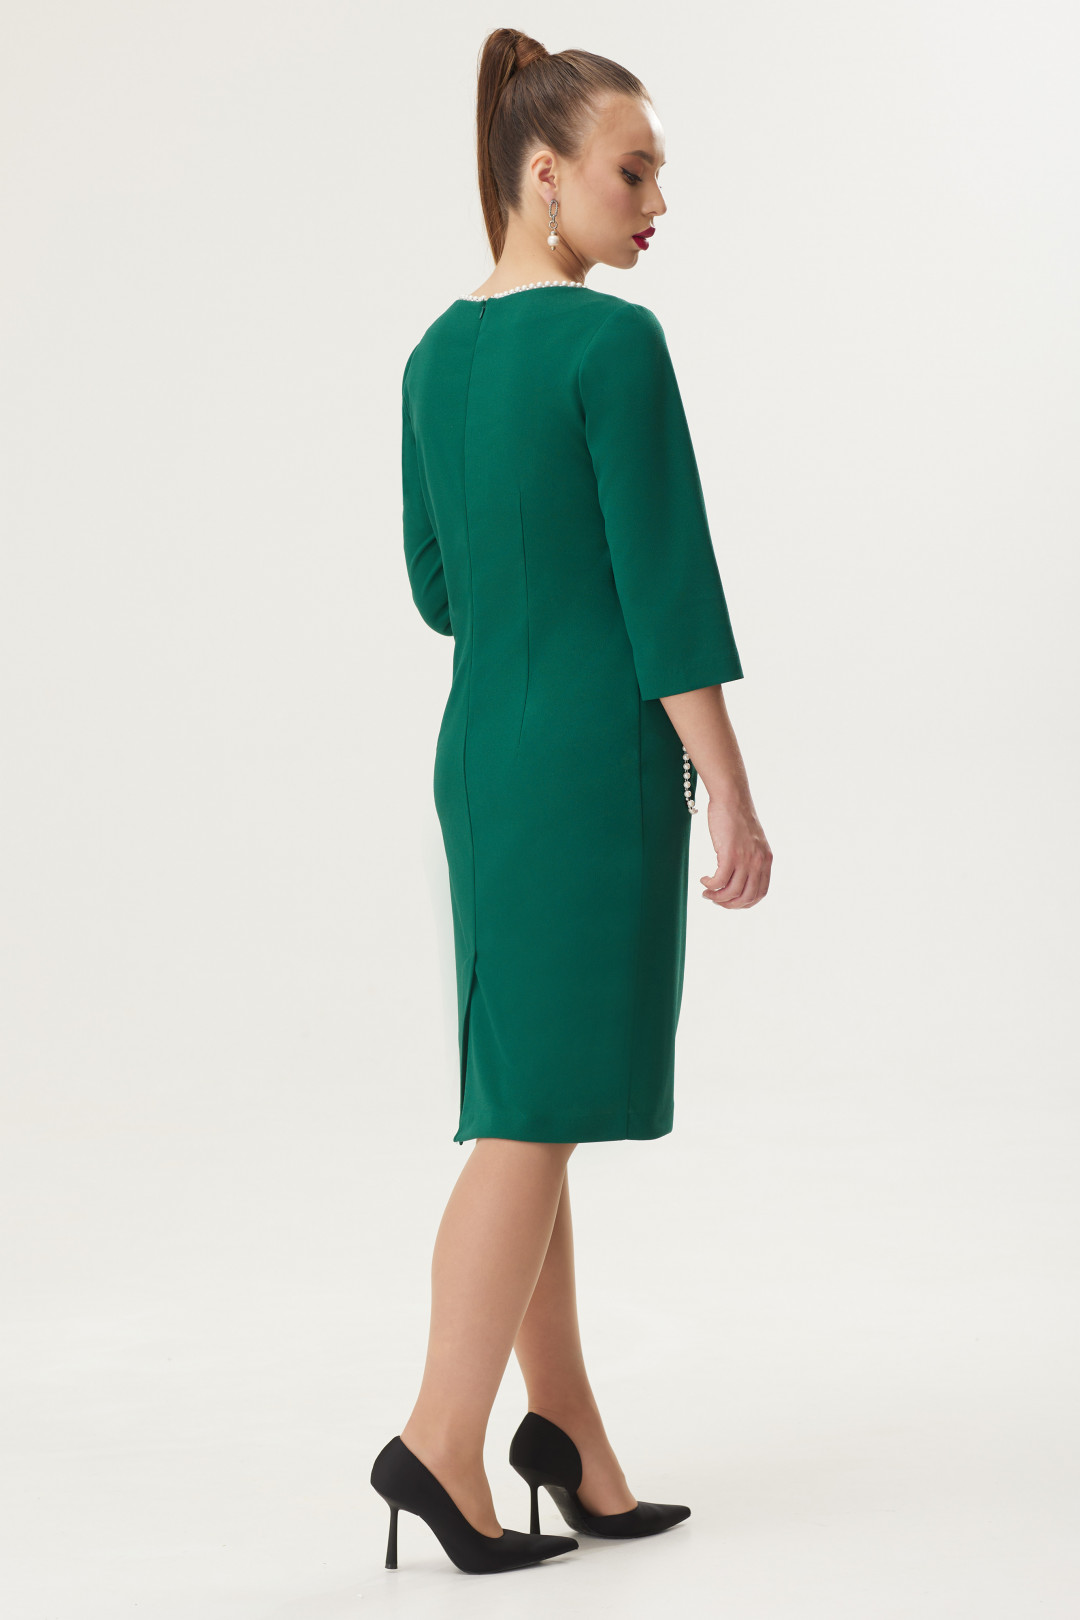 Платье Галеан Cтиль 924 зелёный